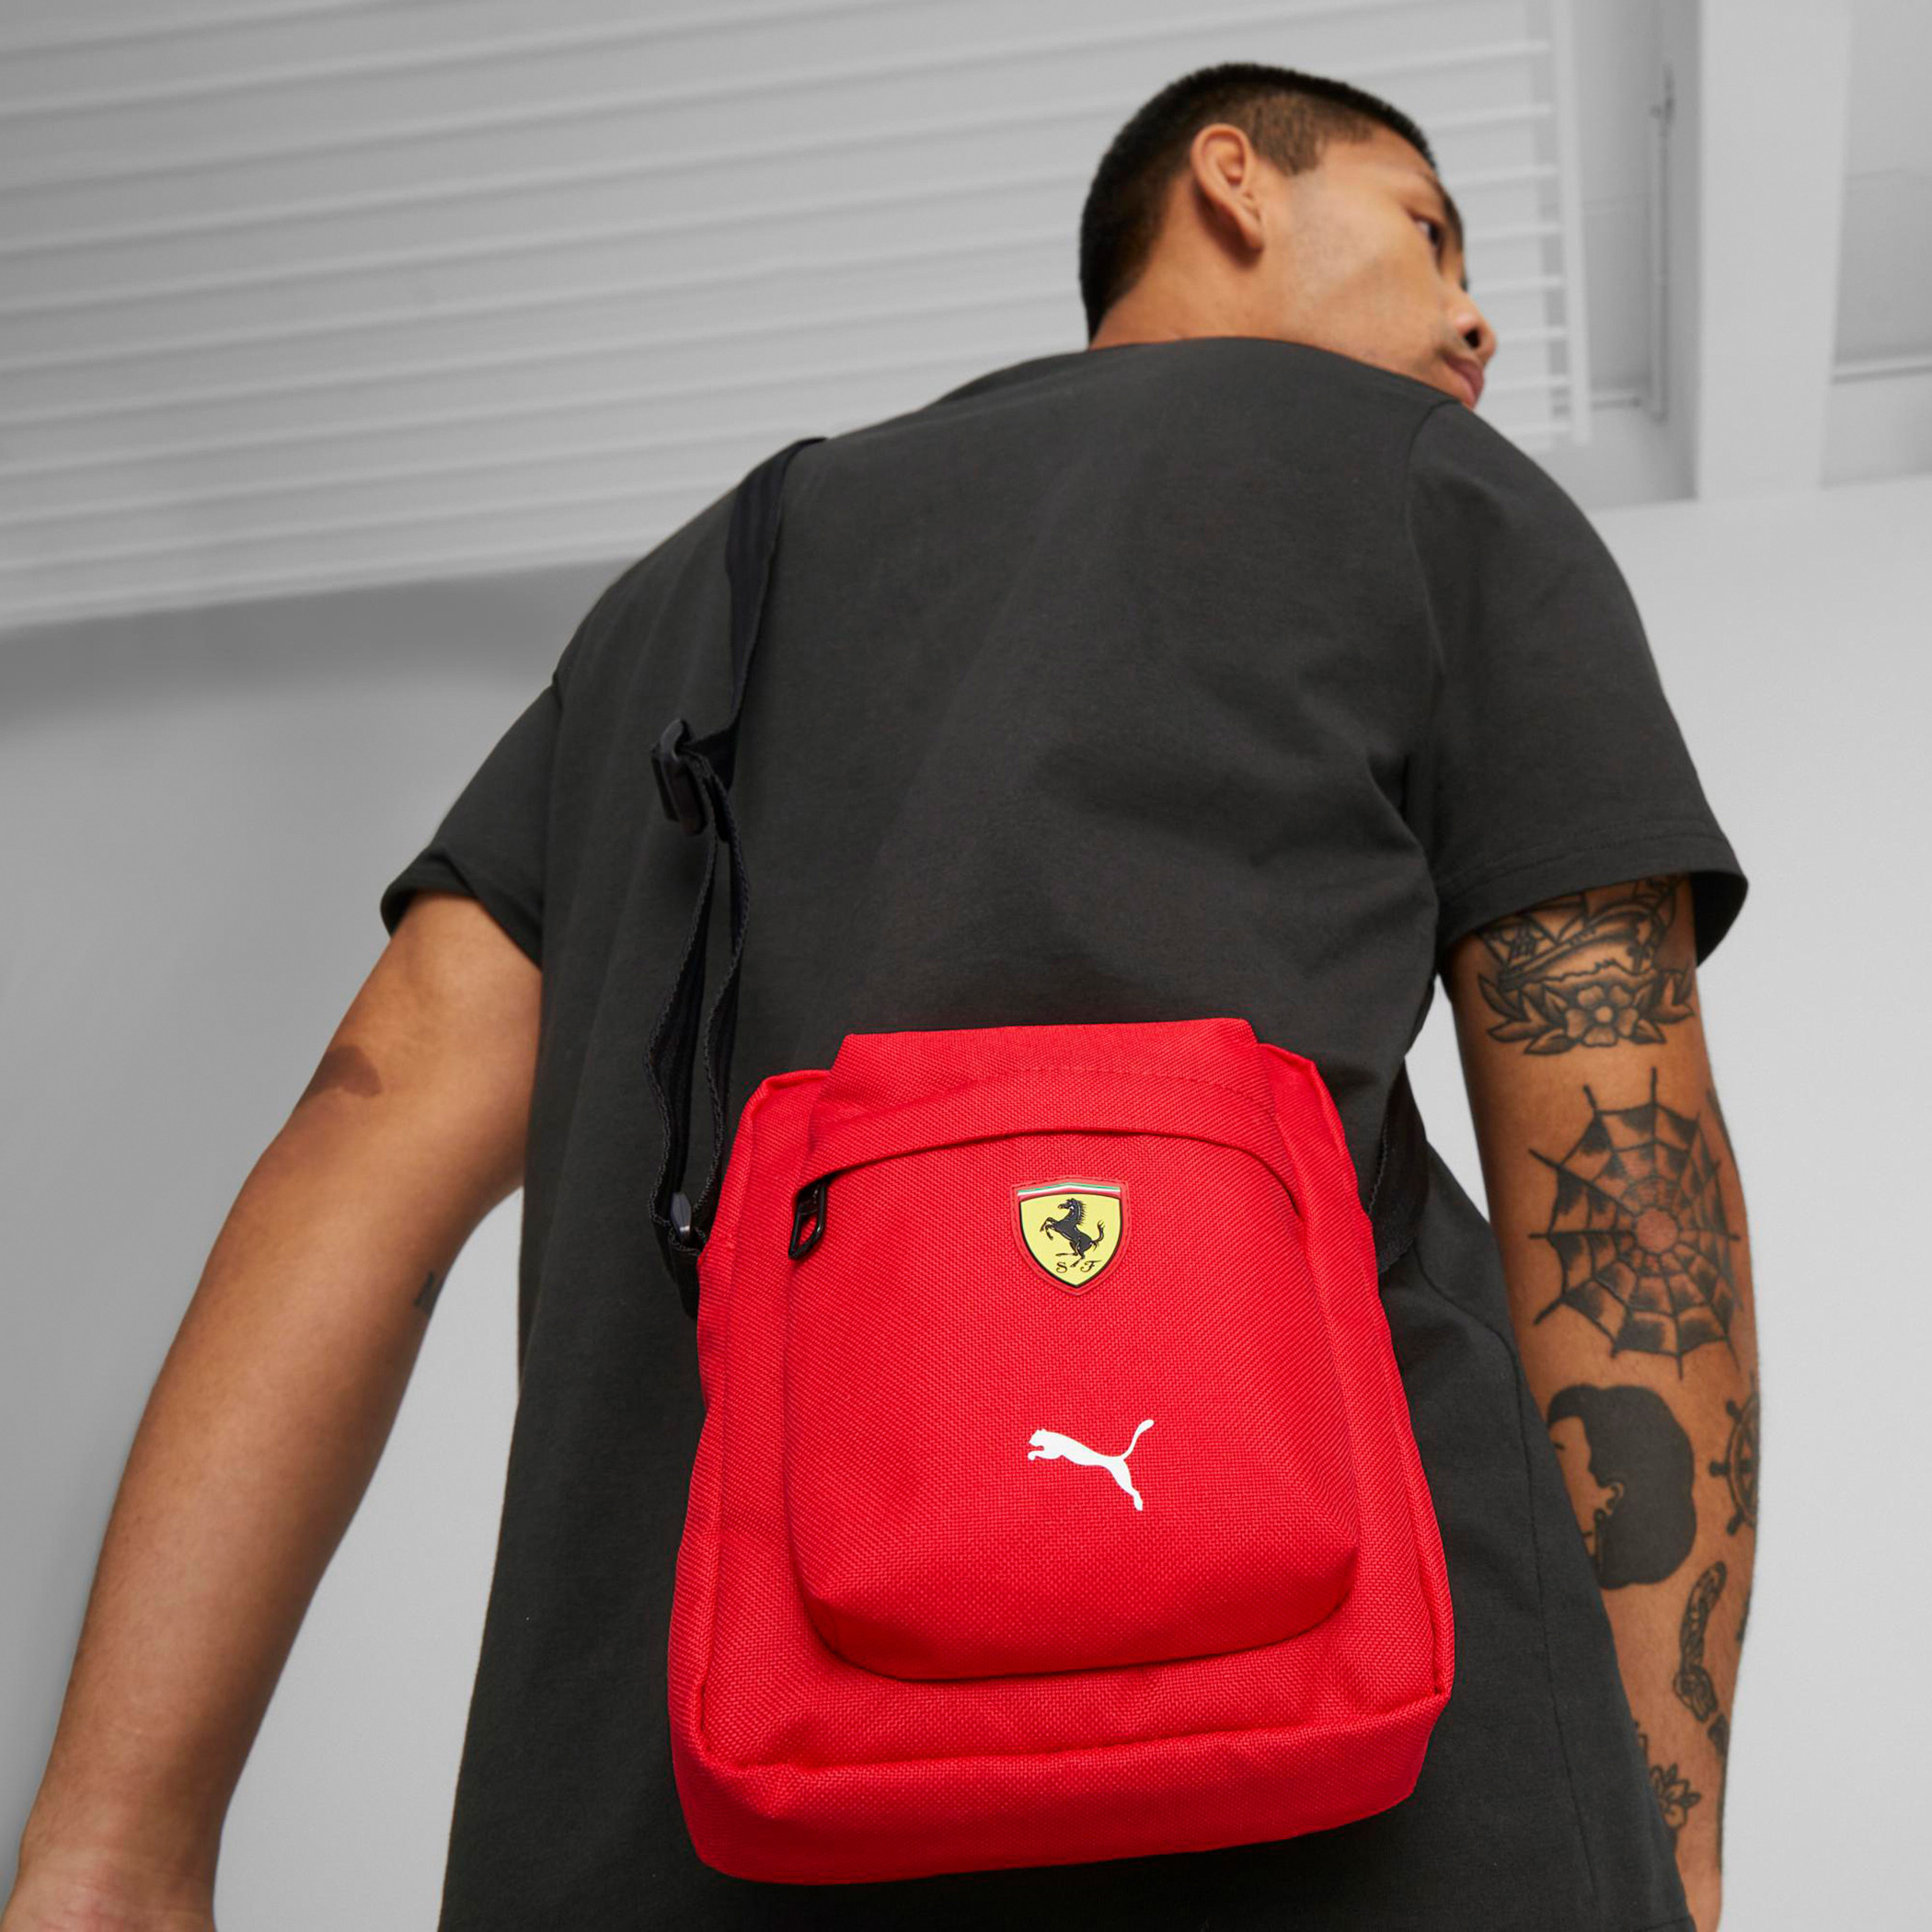 Ferrari Shell Promo Back Pack Bag and ball | eBay